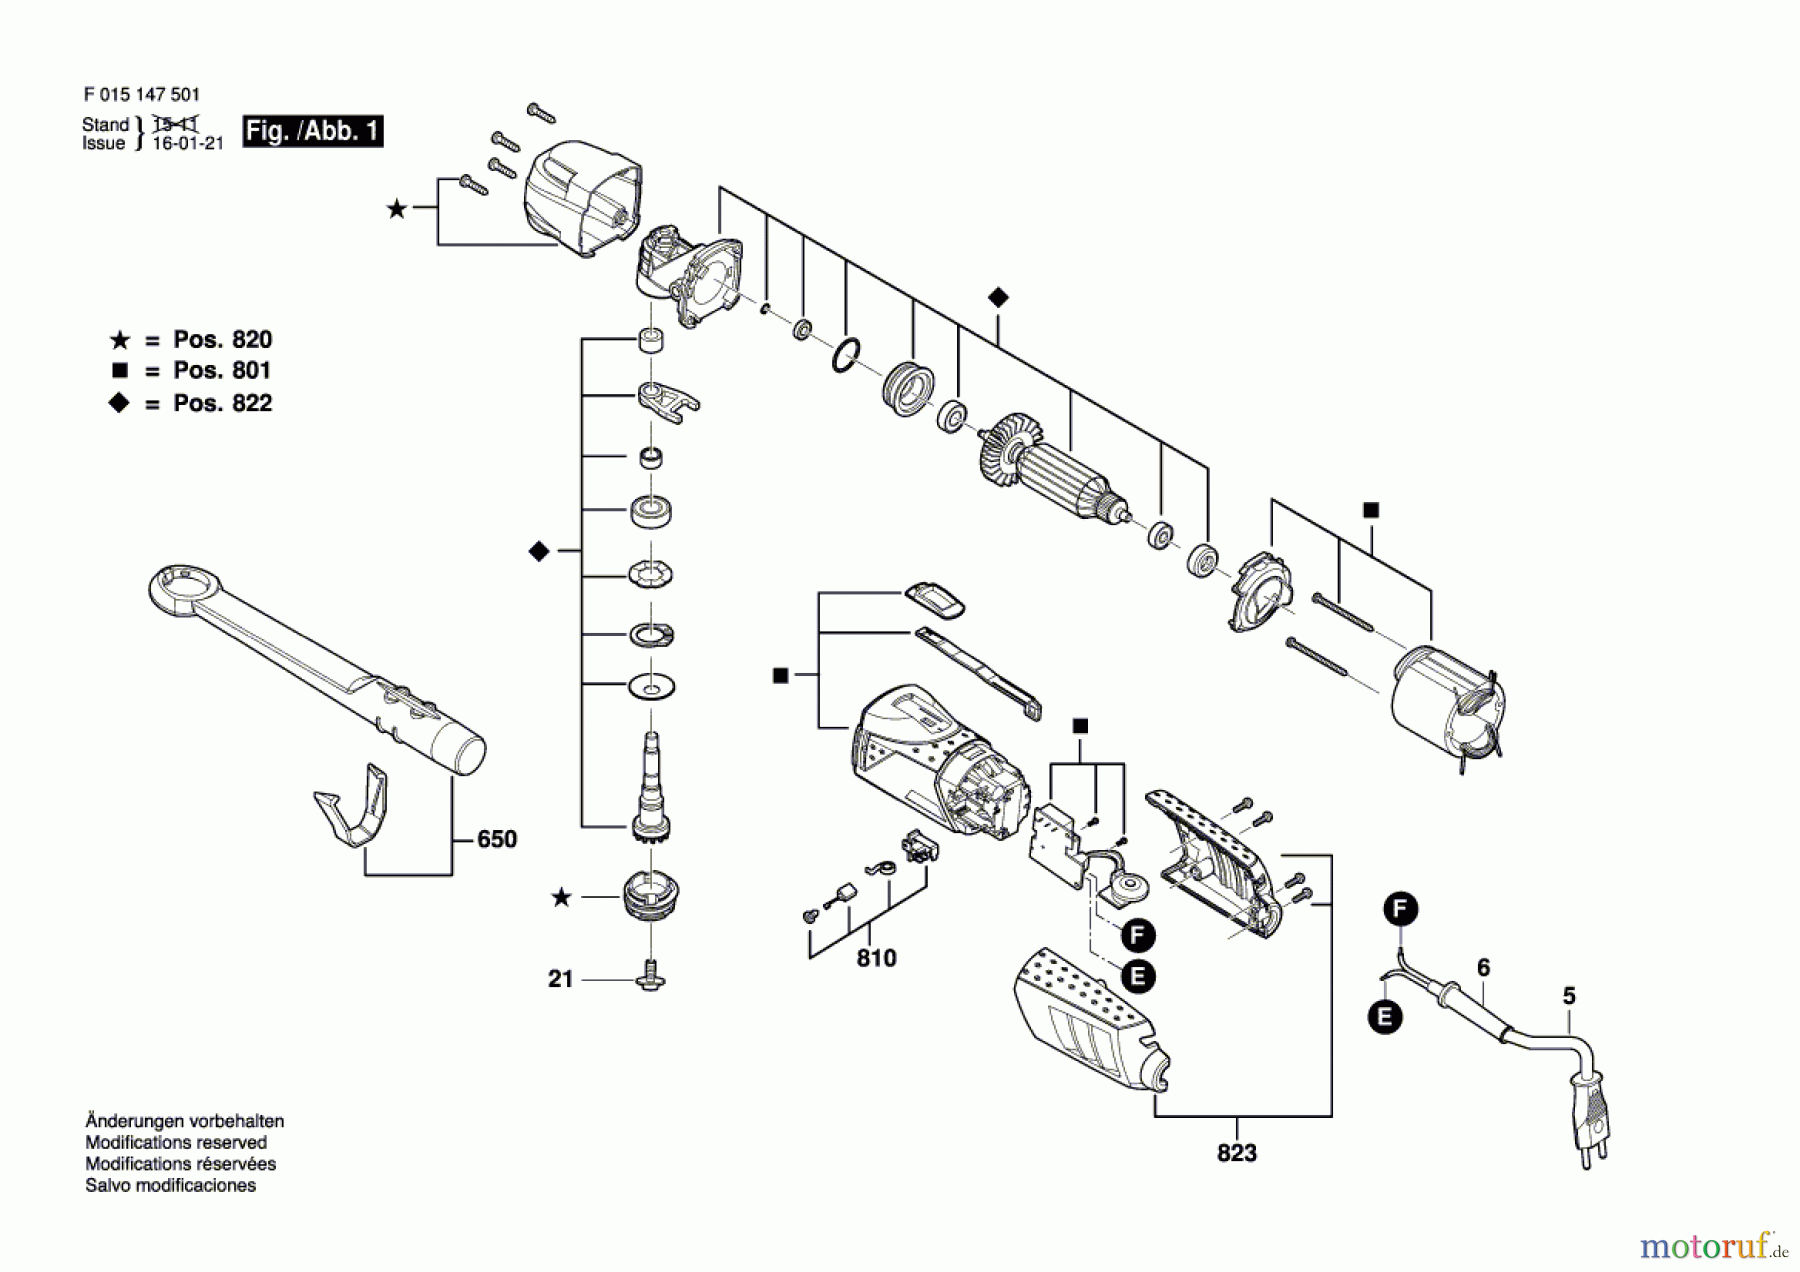  Bosch Werkzeug Multifunktionswerkzeug 1475 Seite 1